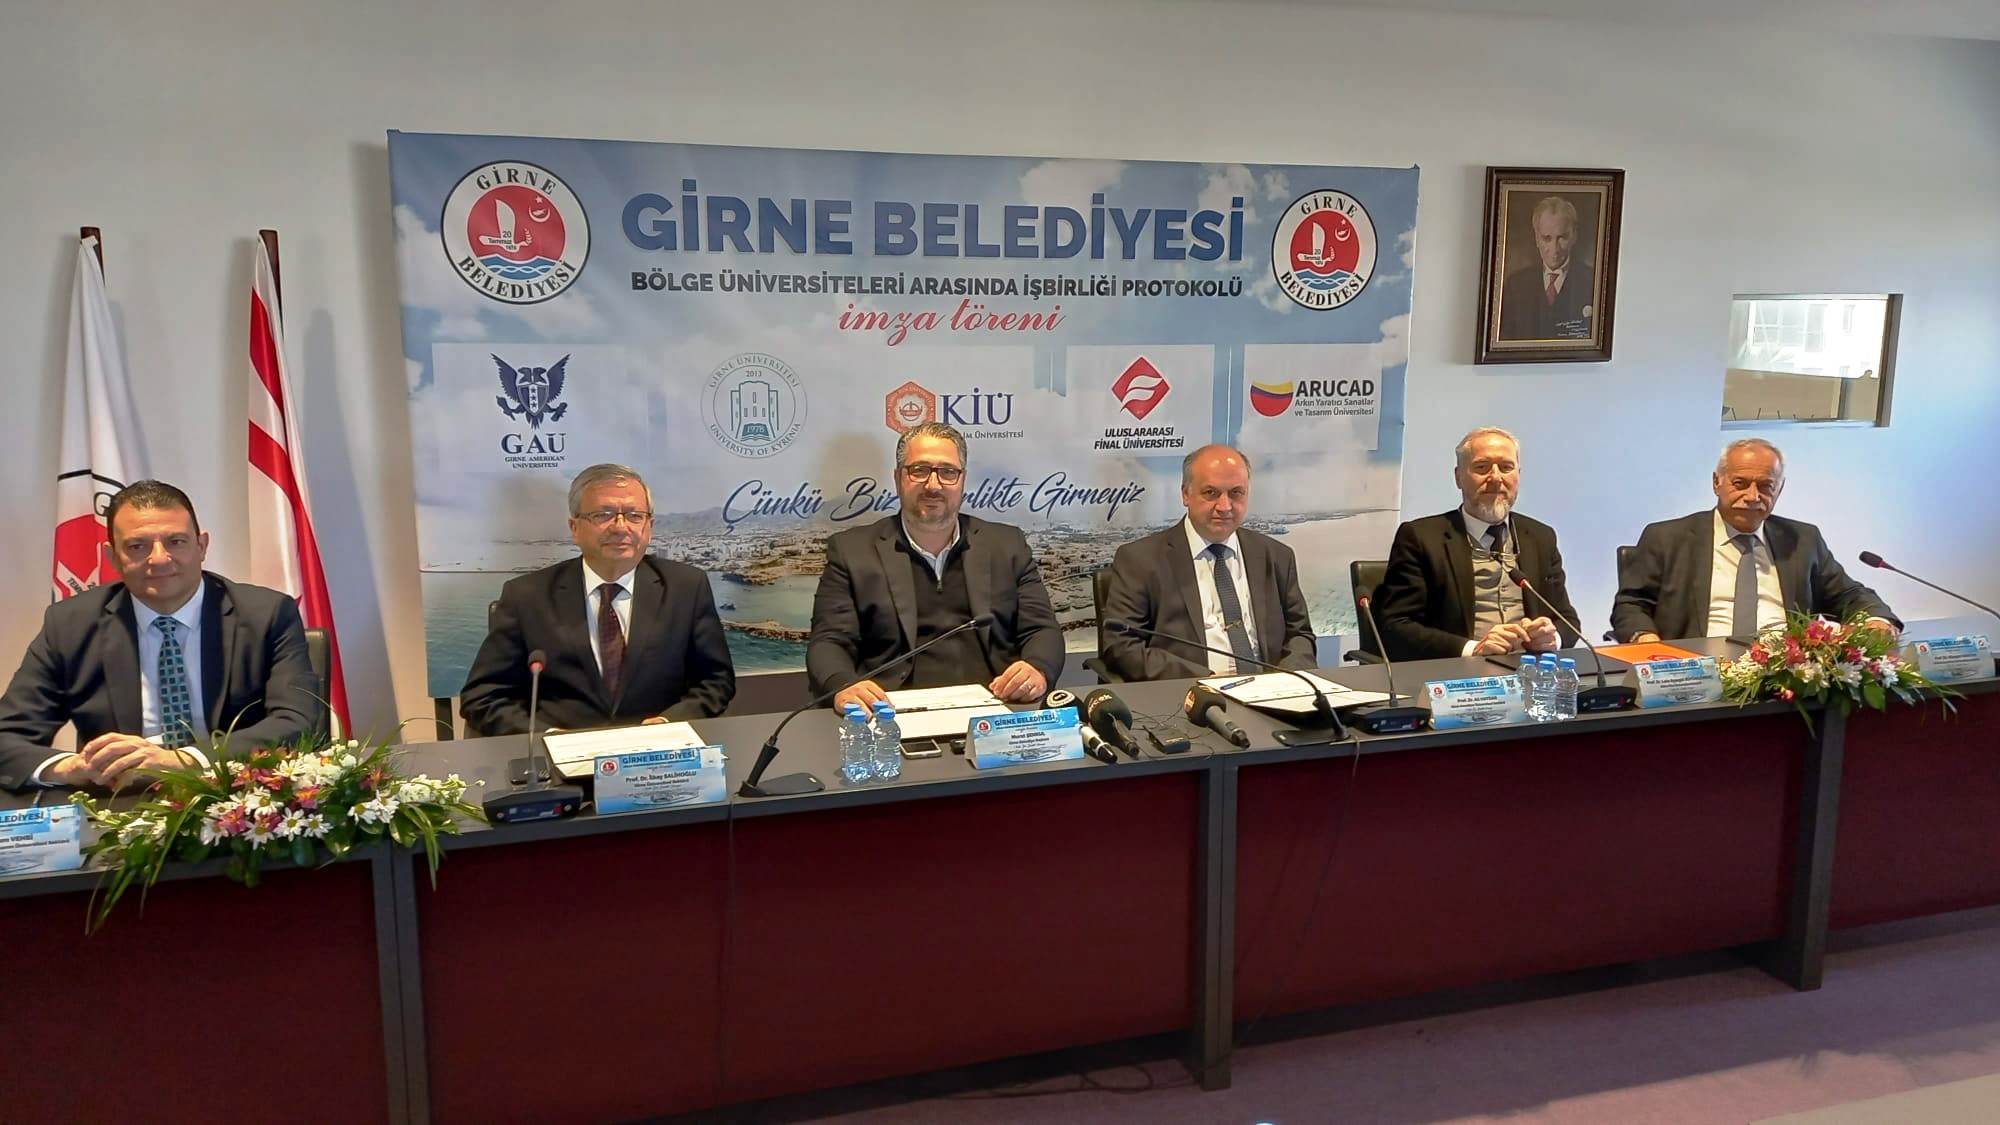 Girne Belediyesi ile 5 bölge üniversitesi iş birliği protokolü imzaladı